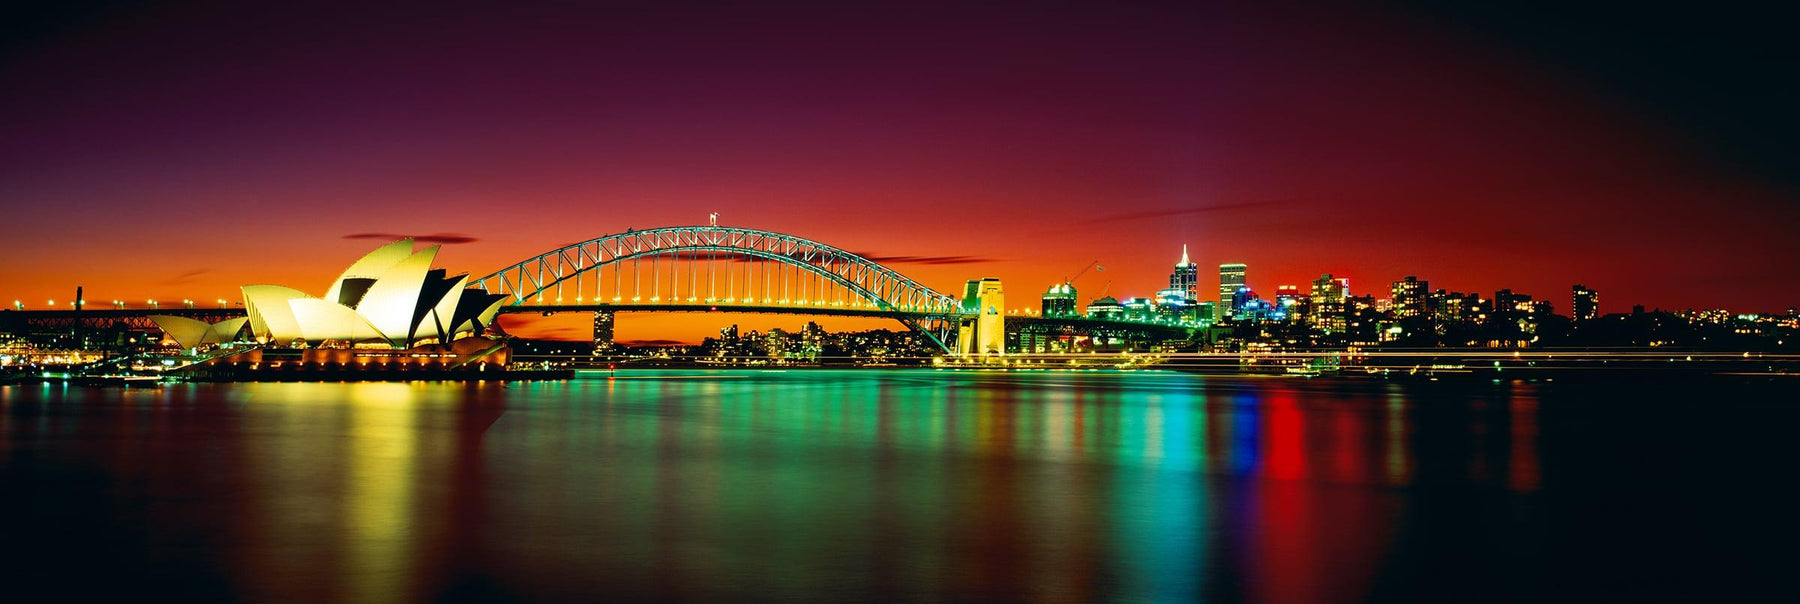 Sydney Harbor Bridge Sydney Opera House and Sydney reflecting on the harbor at night